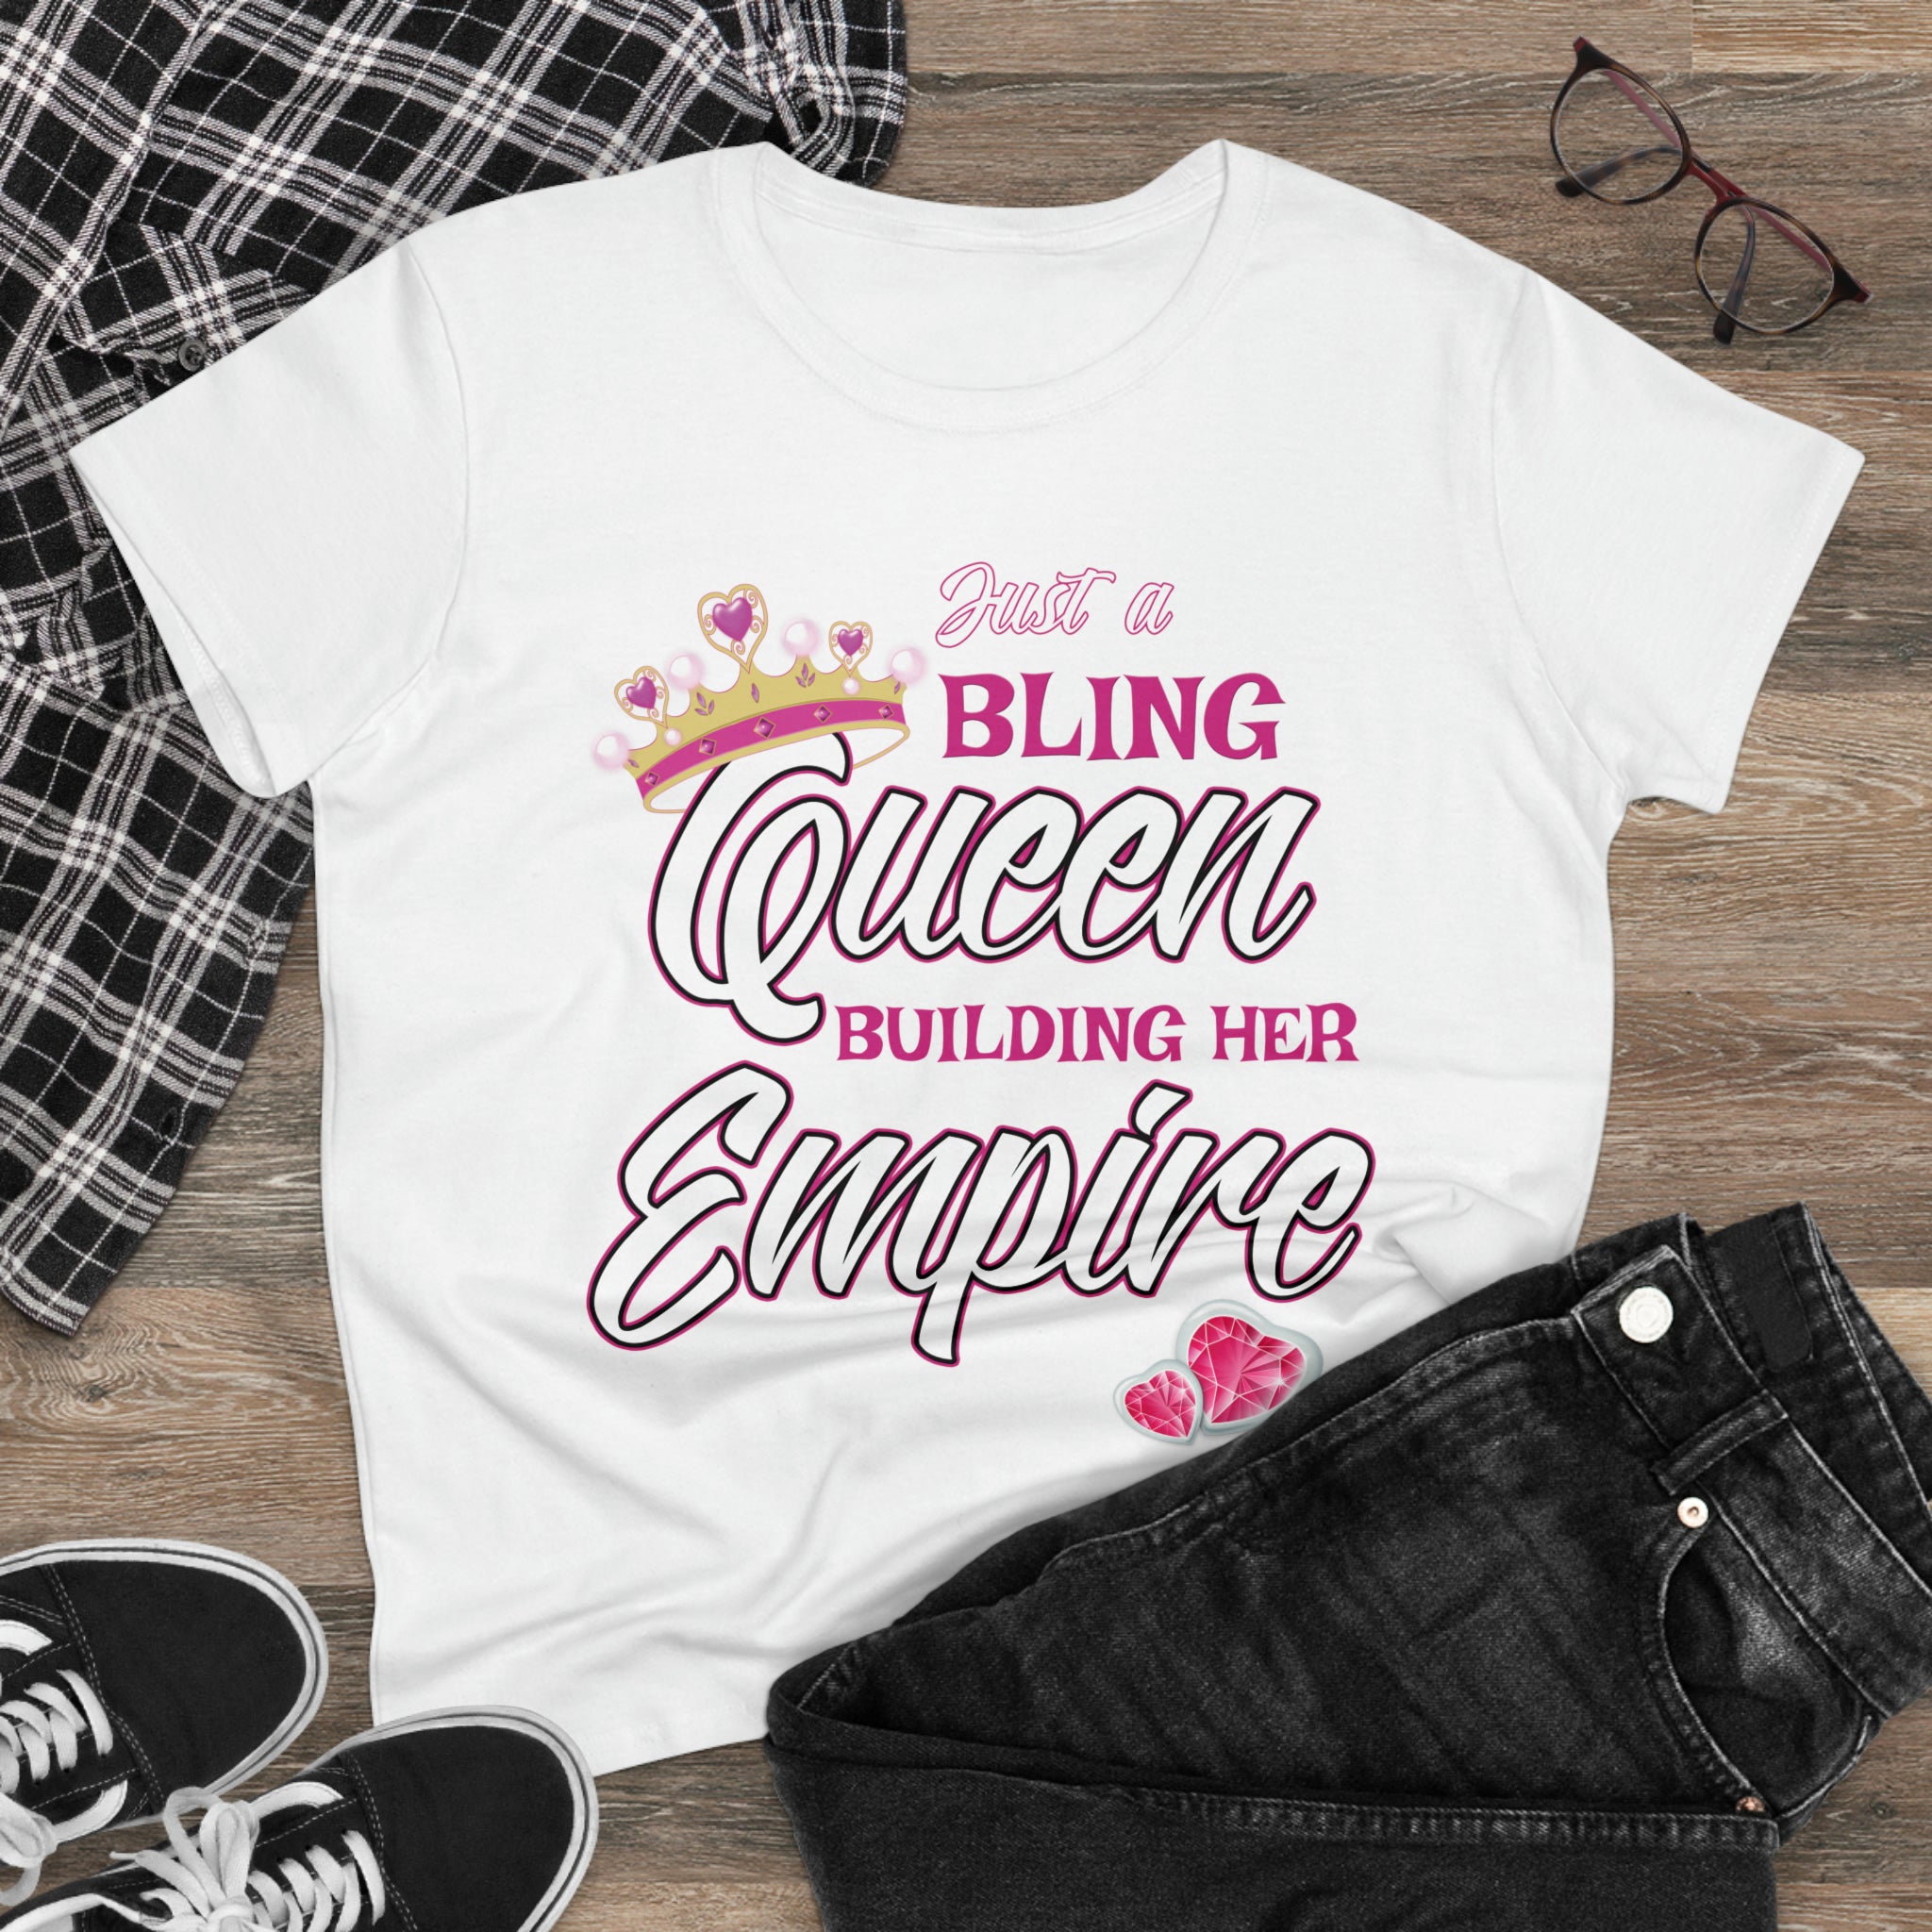 Women's Midweight Cotton Tee Queen Building her Empire